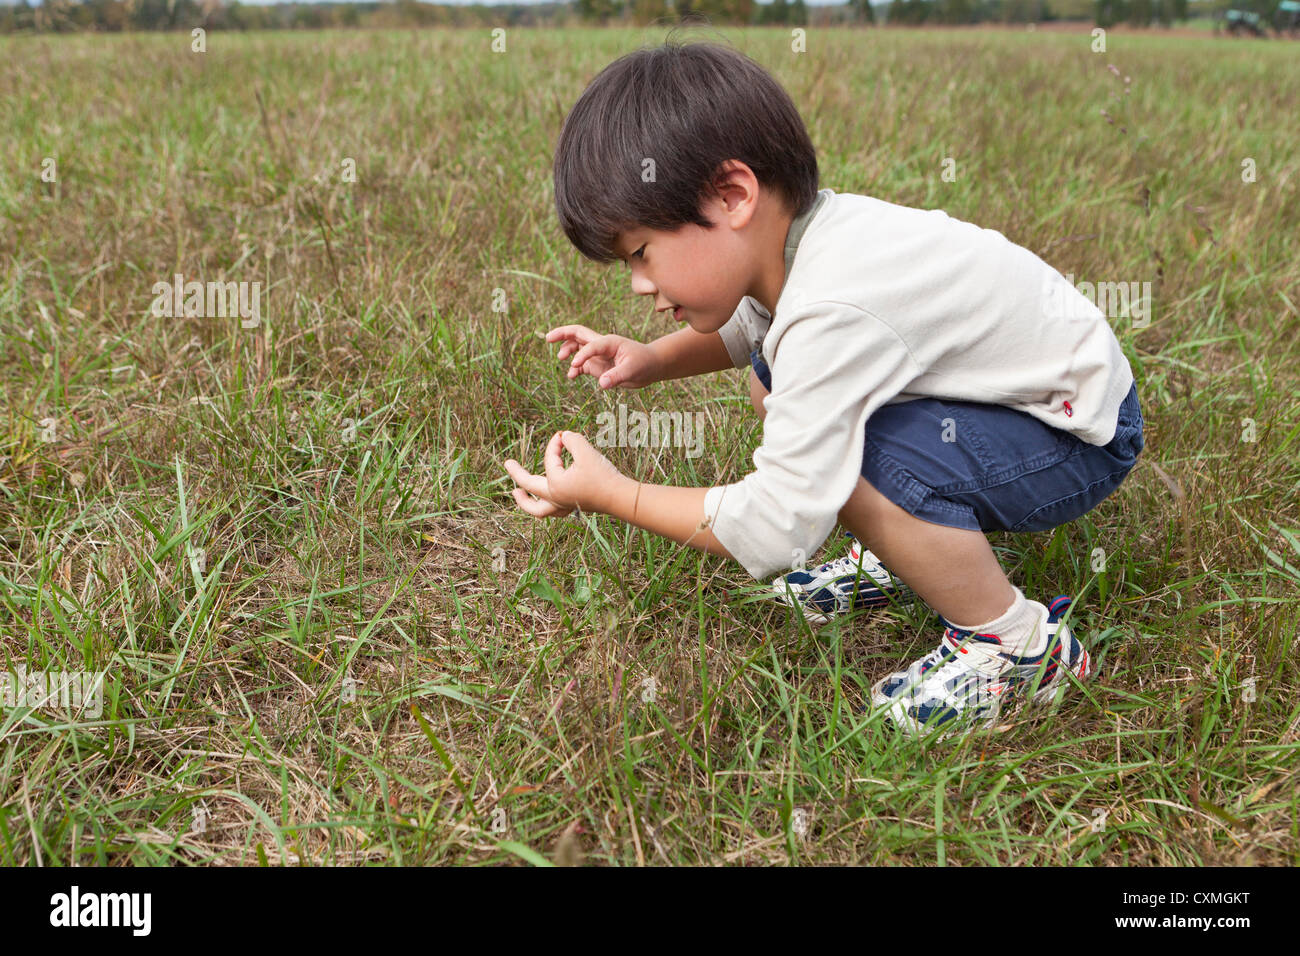 Chico asiático inspeccionando los insectos en un campo de hierba Foto de stock